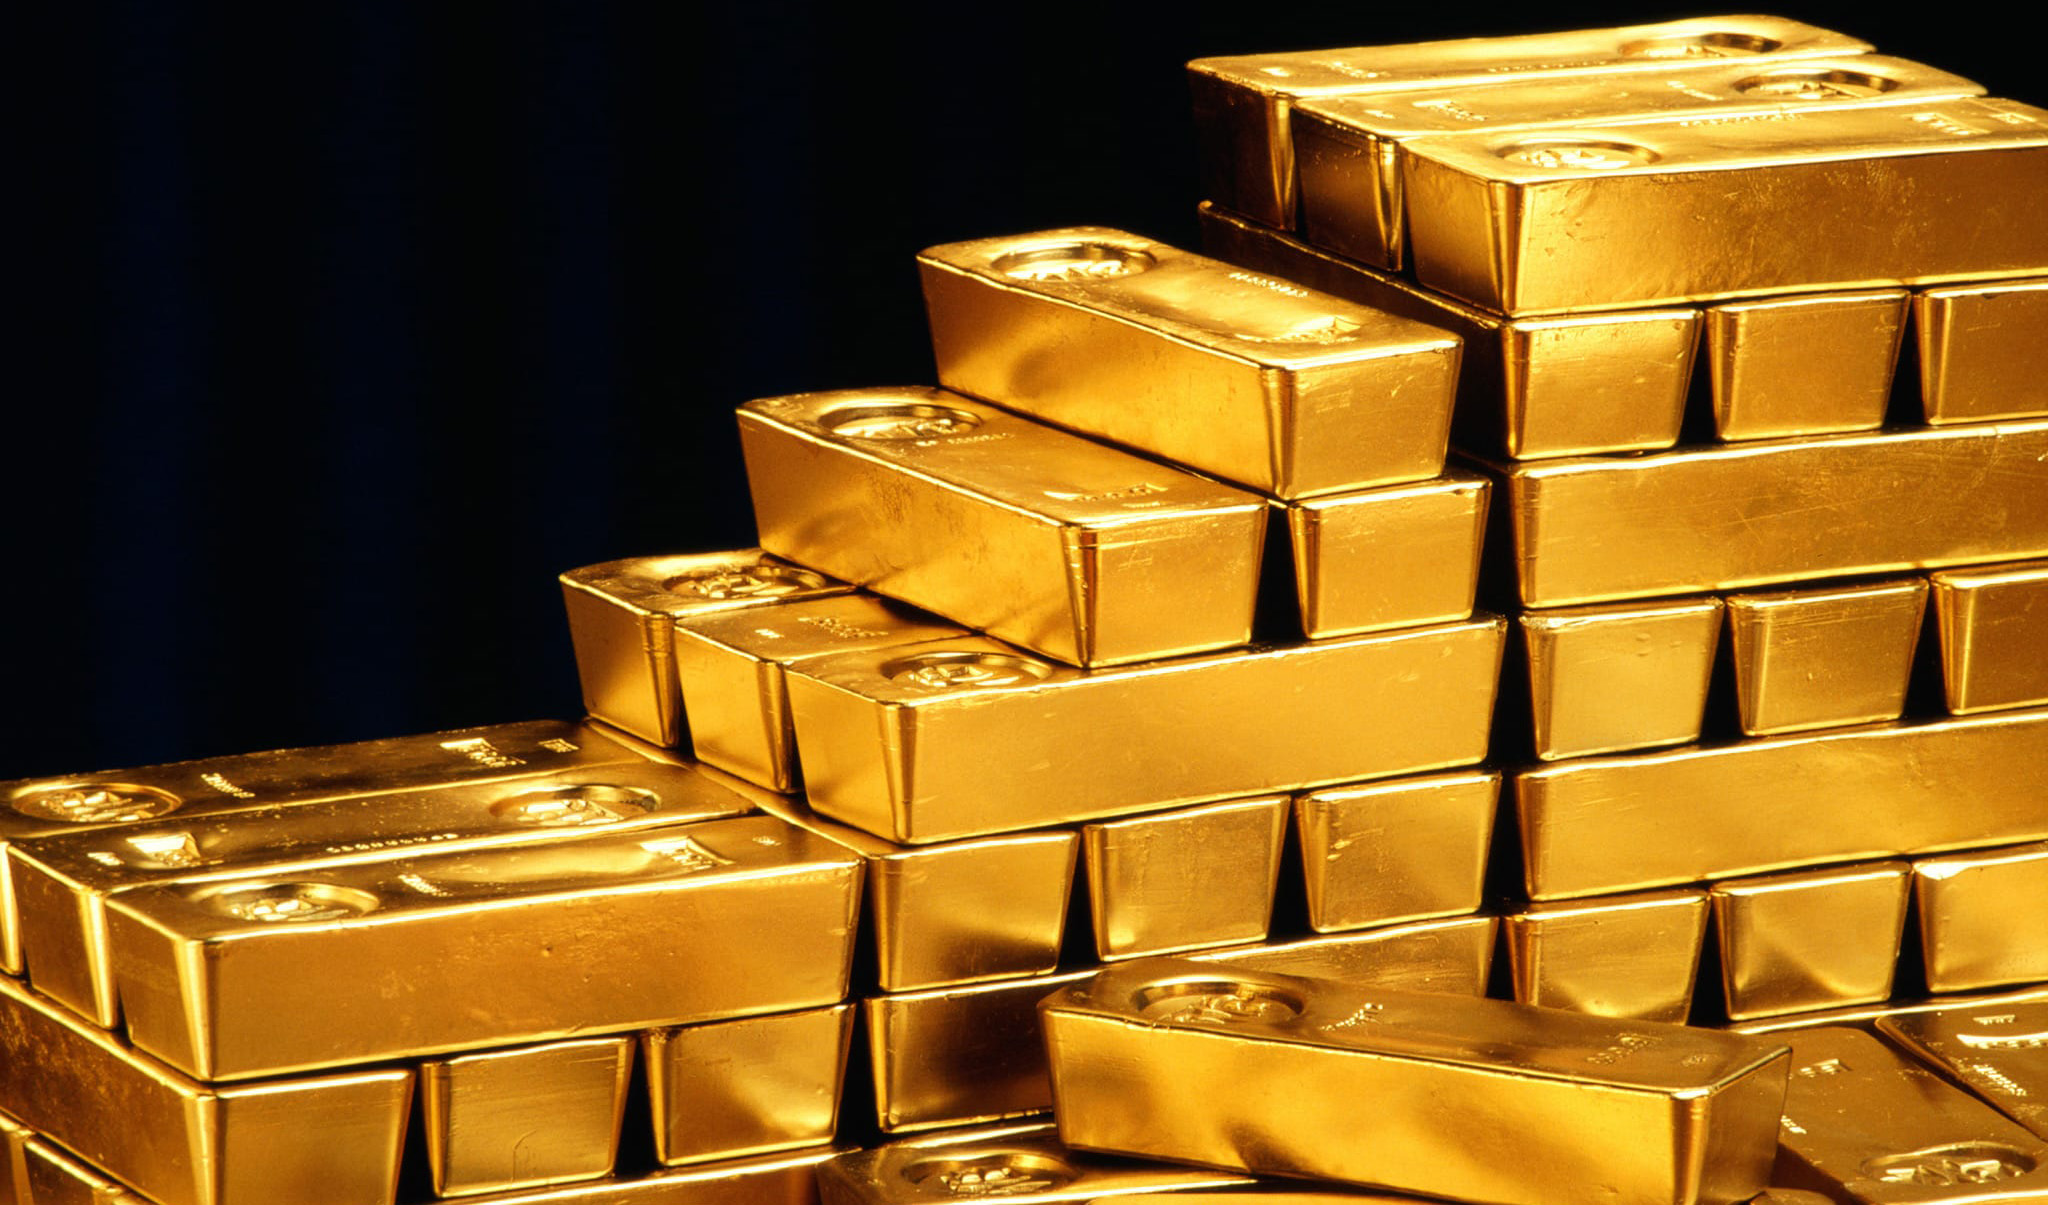 فروش ۲.۷ تن طلا در ۲۰ حراج/ امروز چقدر طلا فروخته شد؟